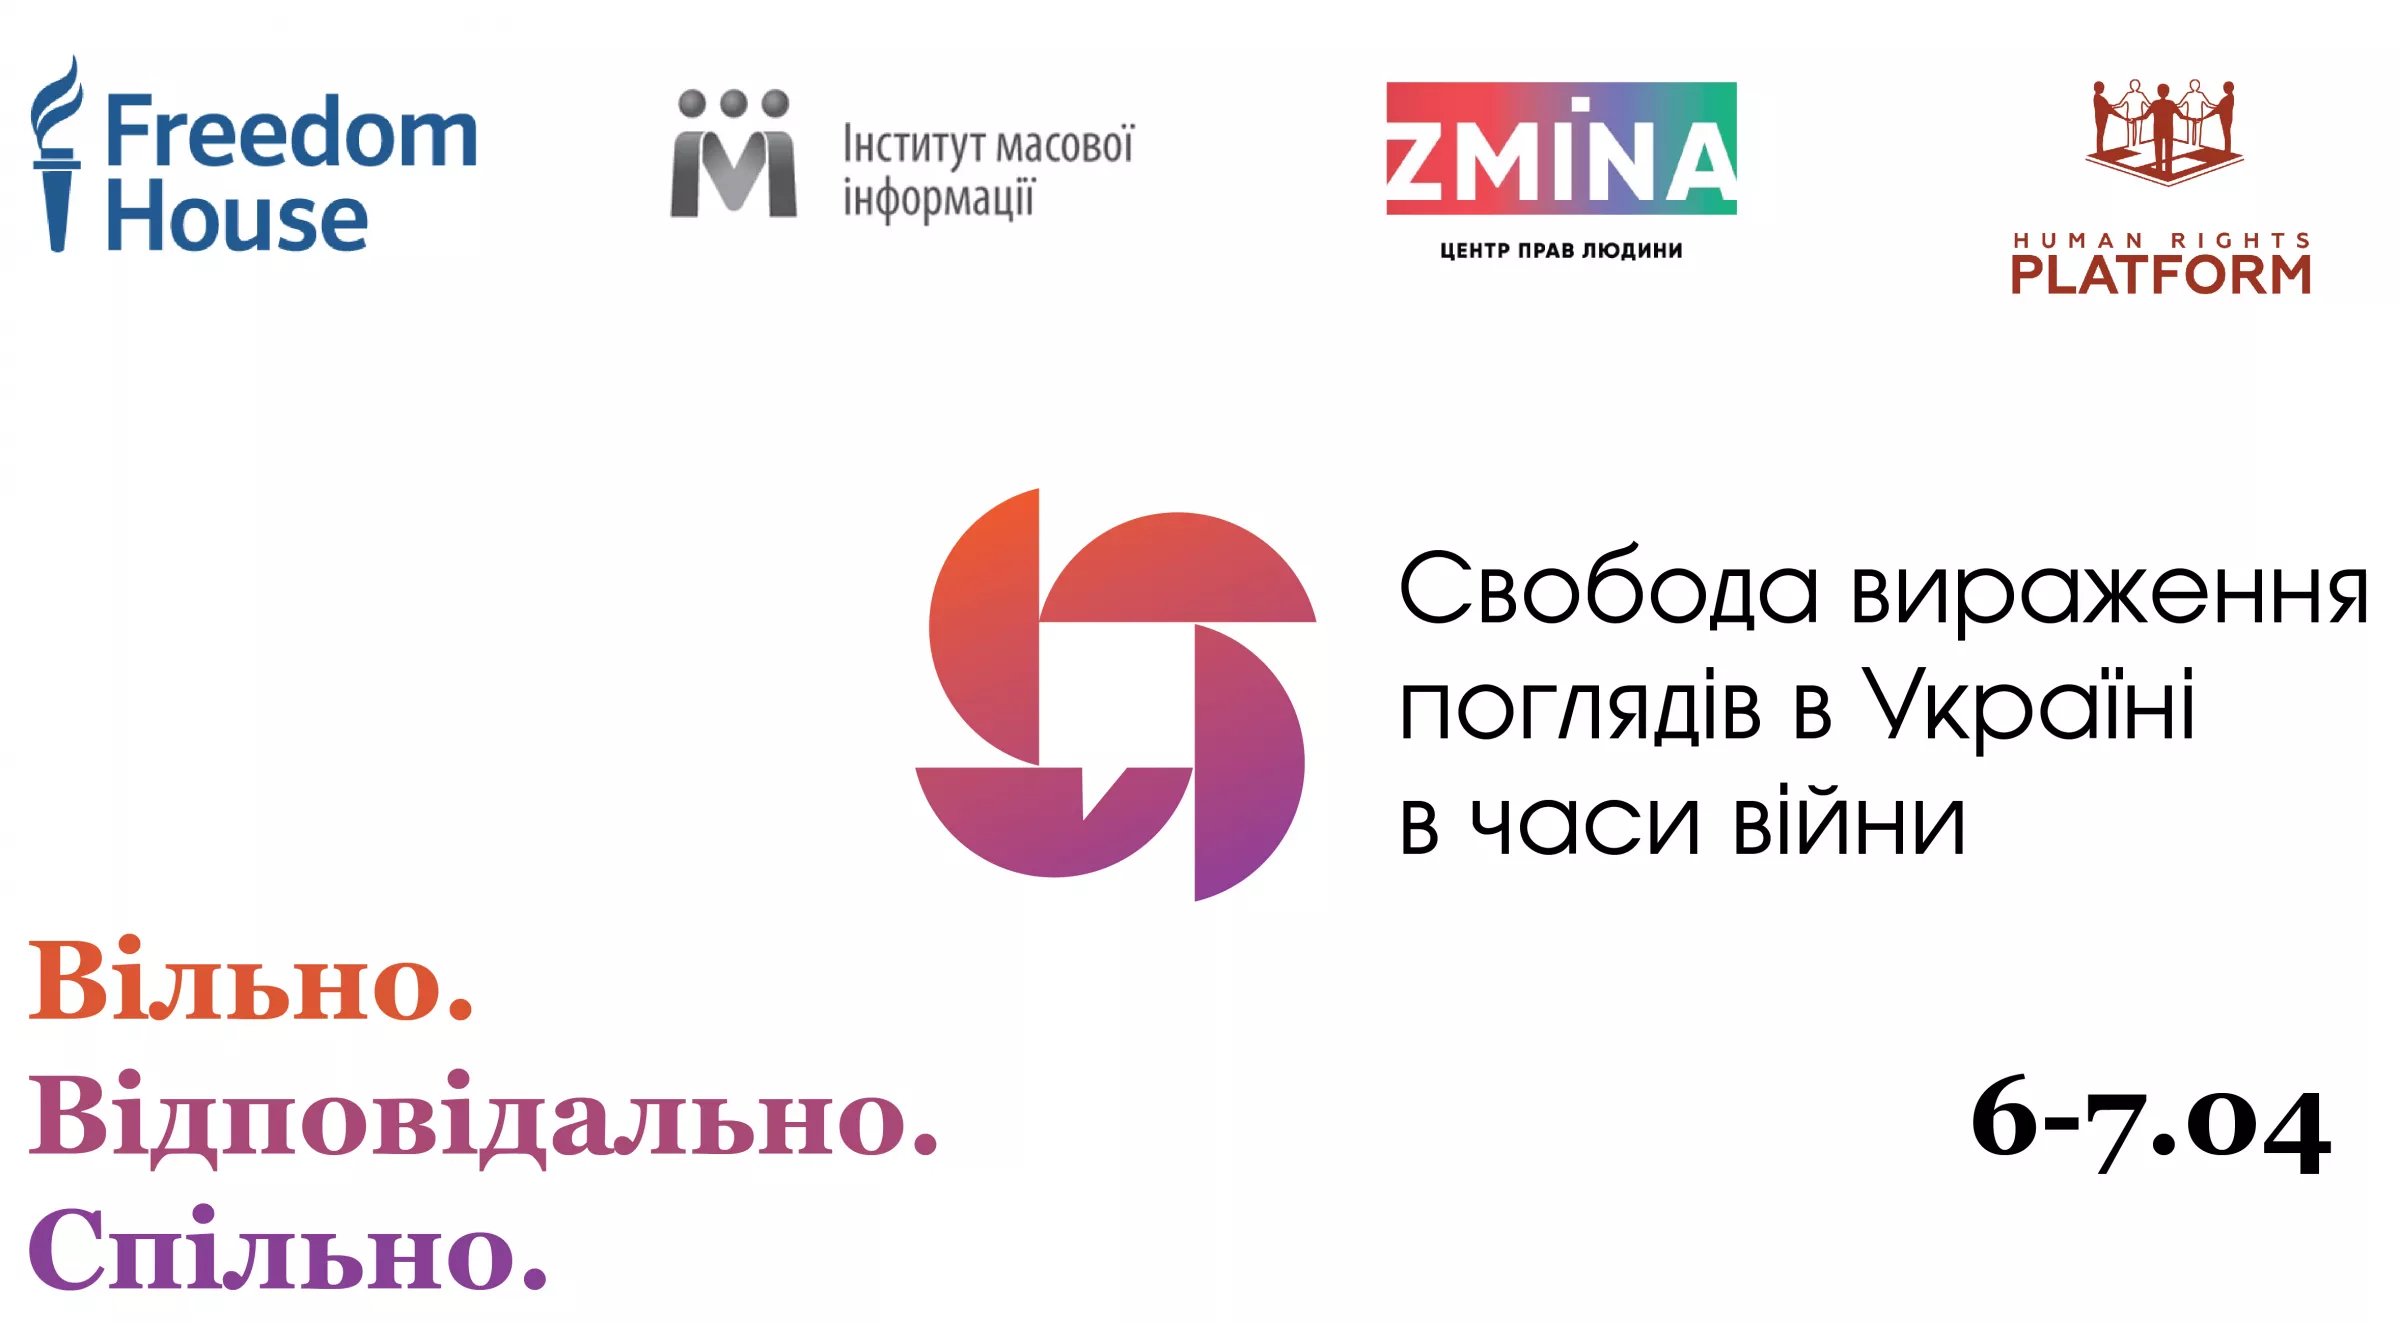 До 3 квітня — реєстрація на конференцію «Свобода вираження поглядів в Україні у часи війни» від Freedom House